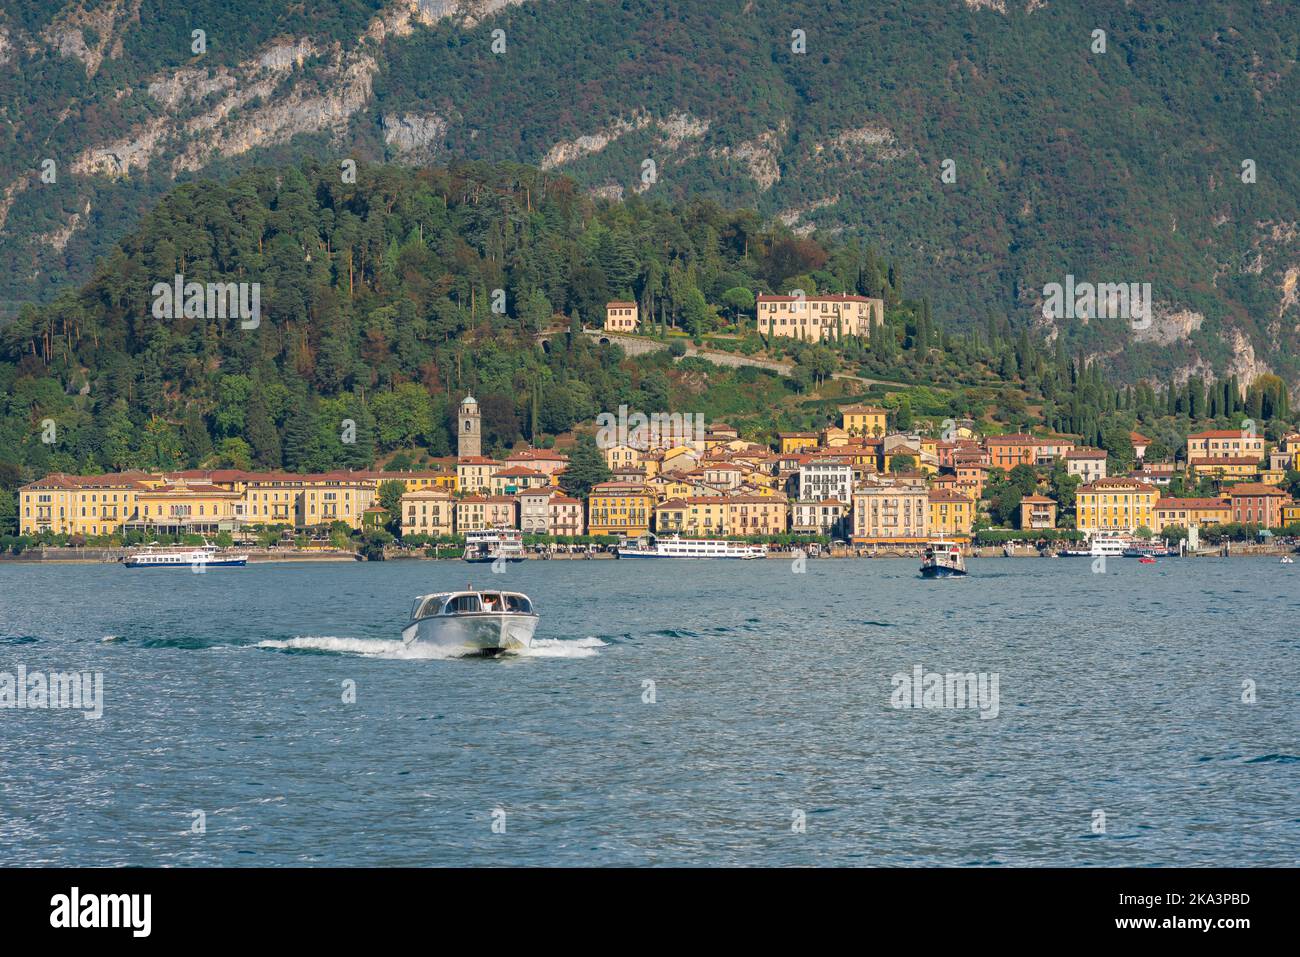 Lago italiano panoramico, vista in estate di un motoscafo che attraversa il lago di Como sullo sfondo della pittoresca cittadina lacustre di Bellagio Foto Stock